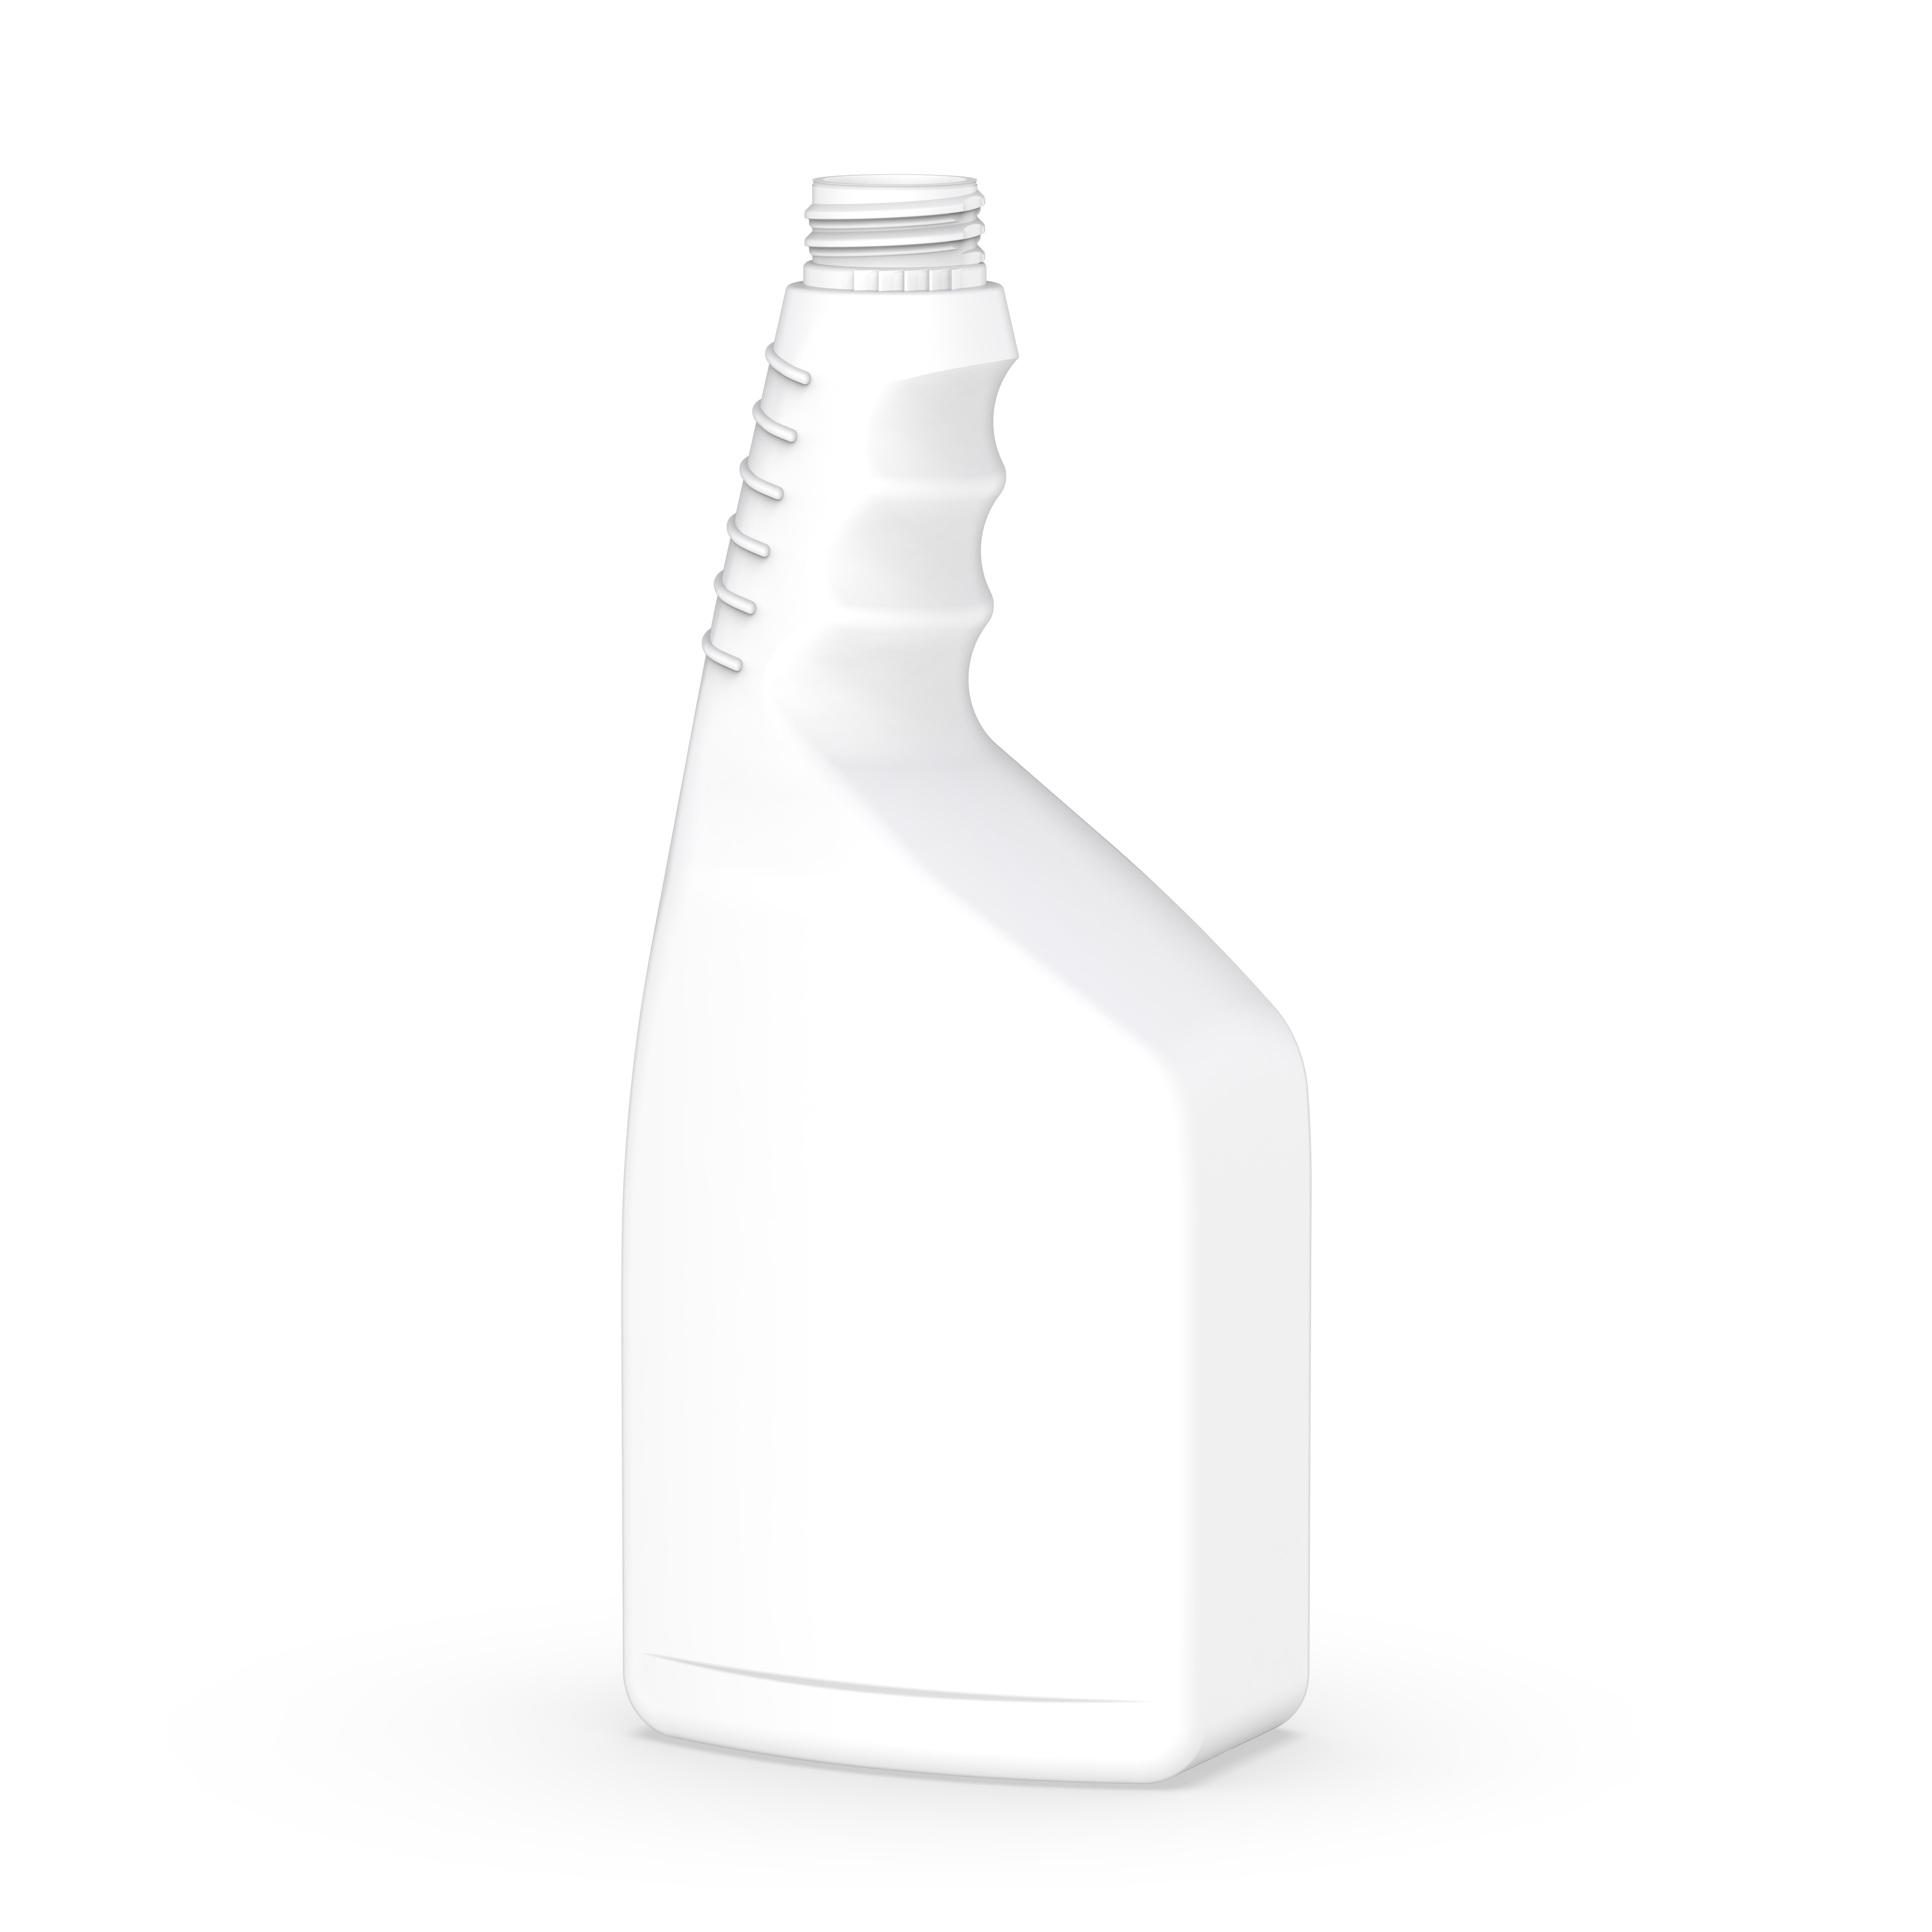 32 Ounce HDPE Plastic Spray Bottle